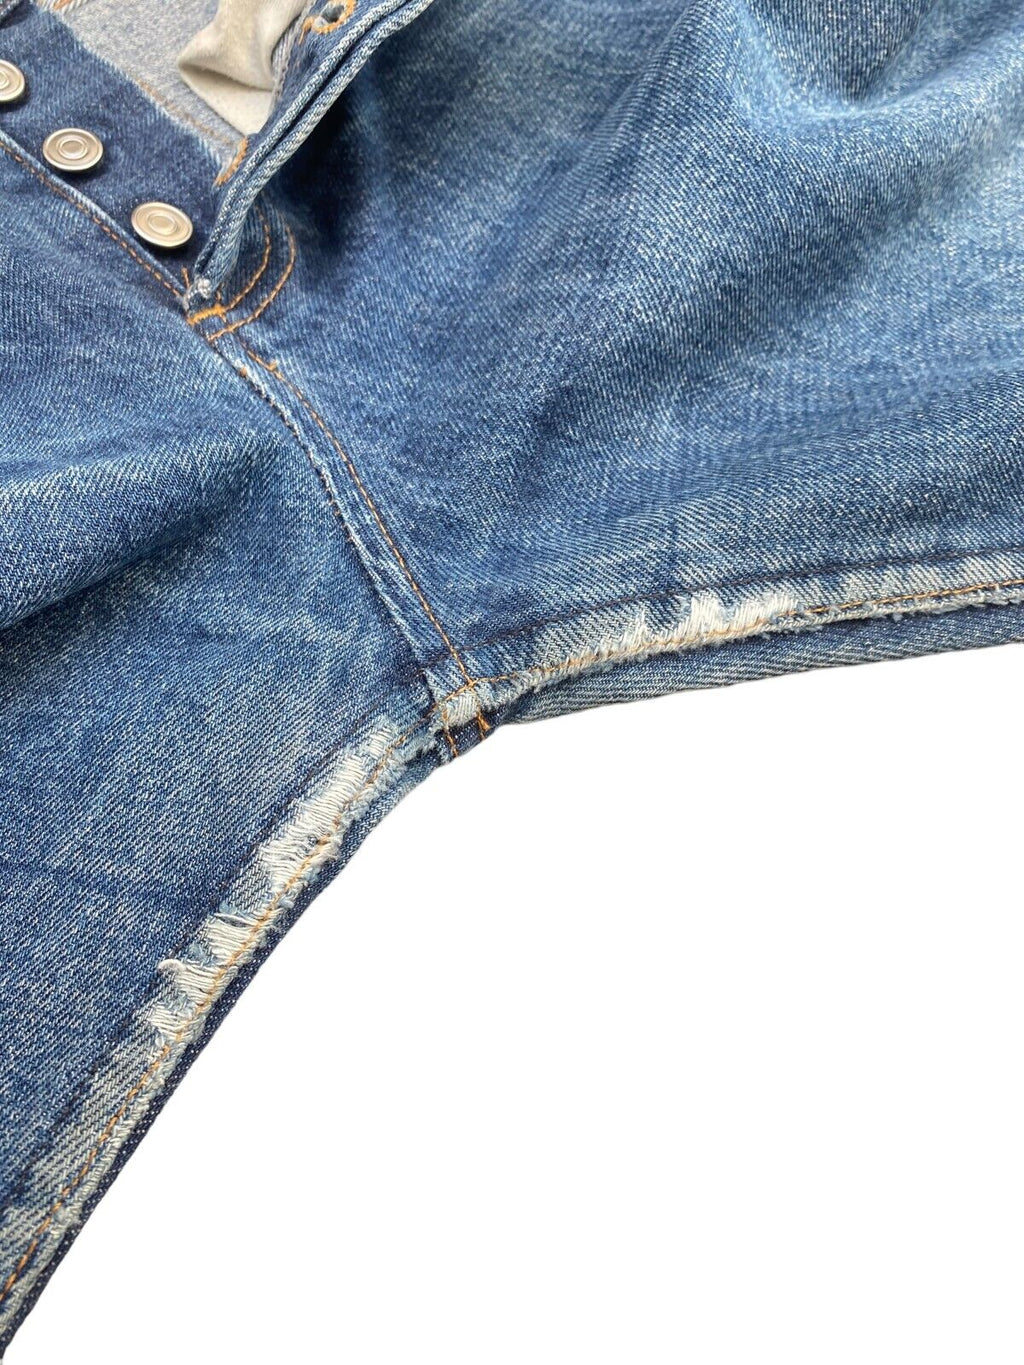 Butler  Standard High waist jeans